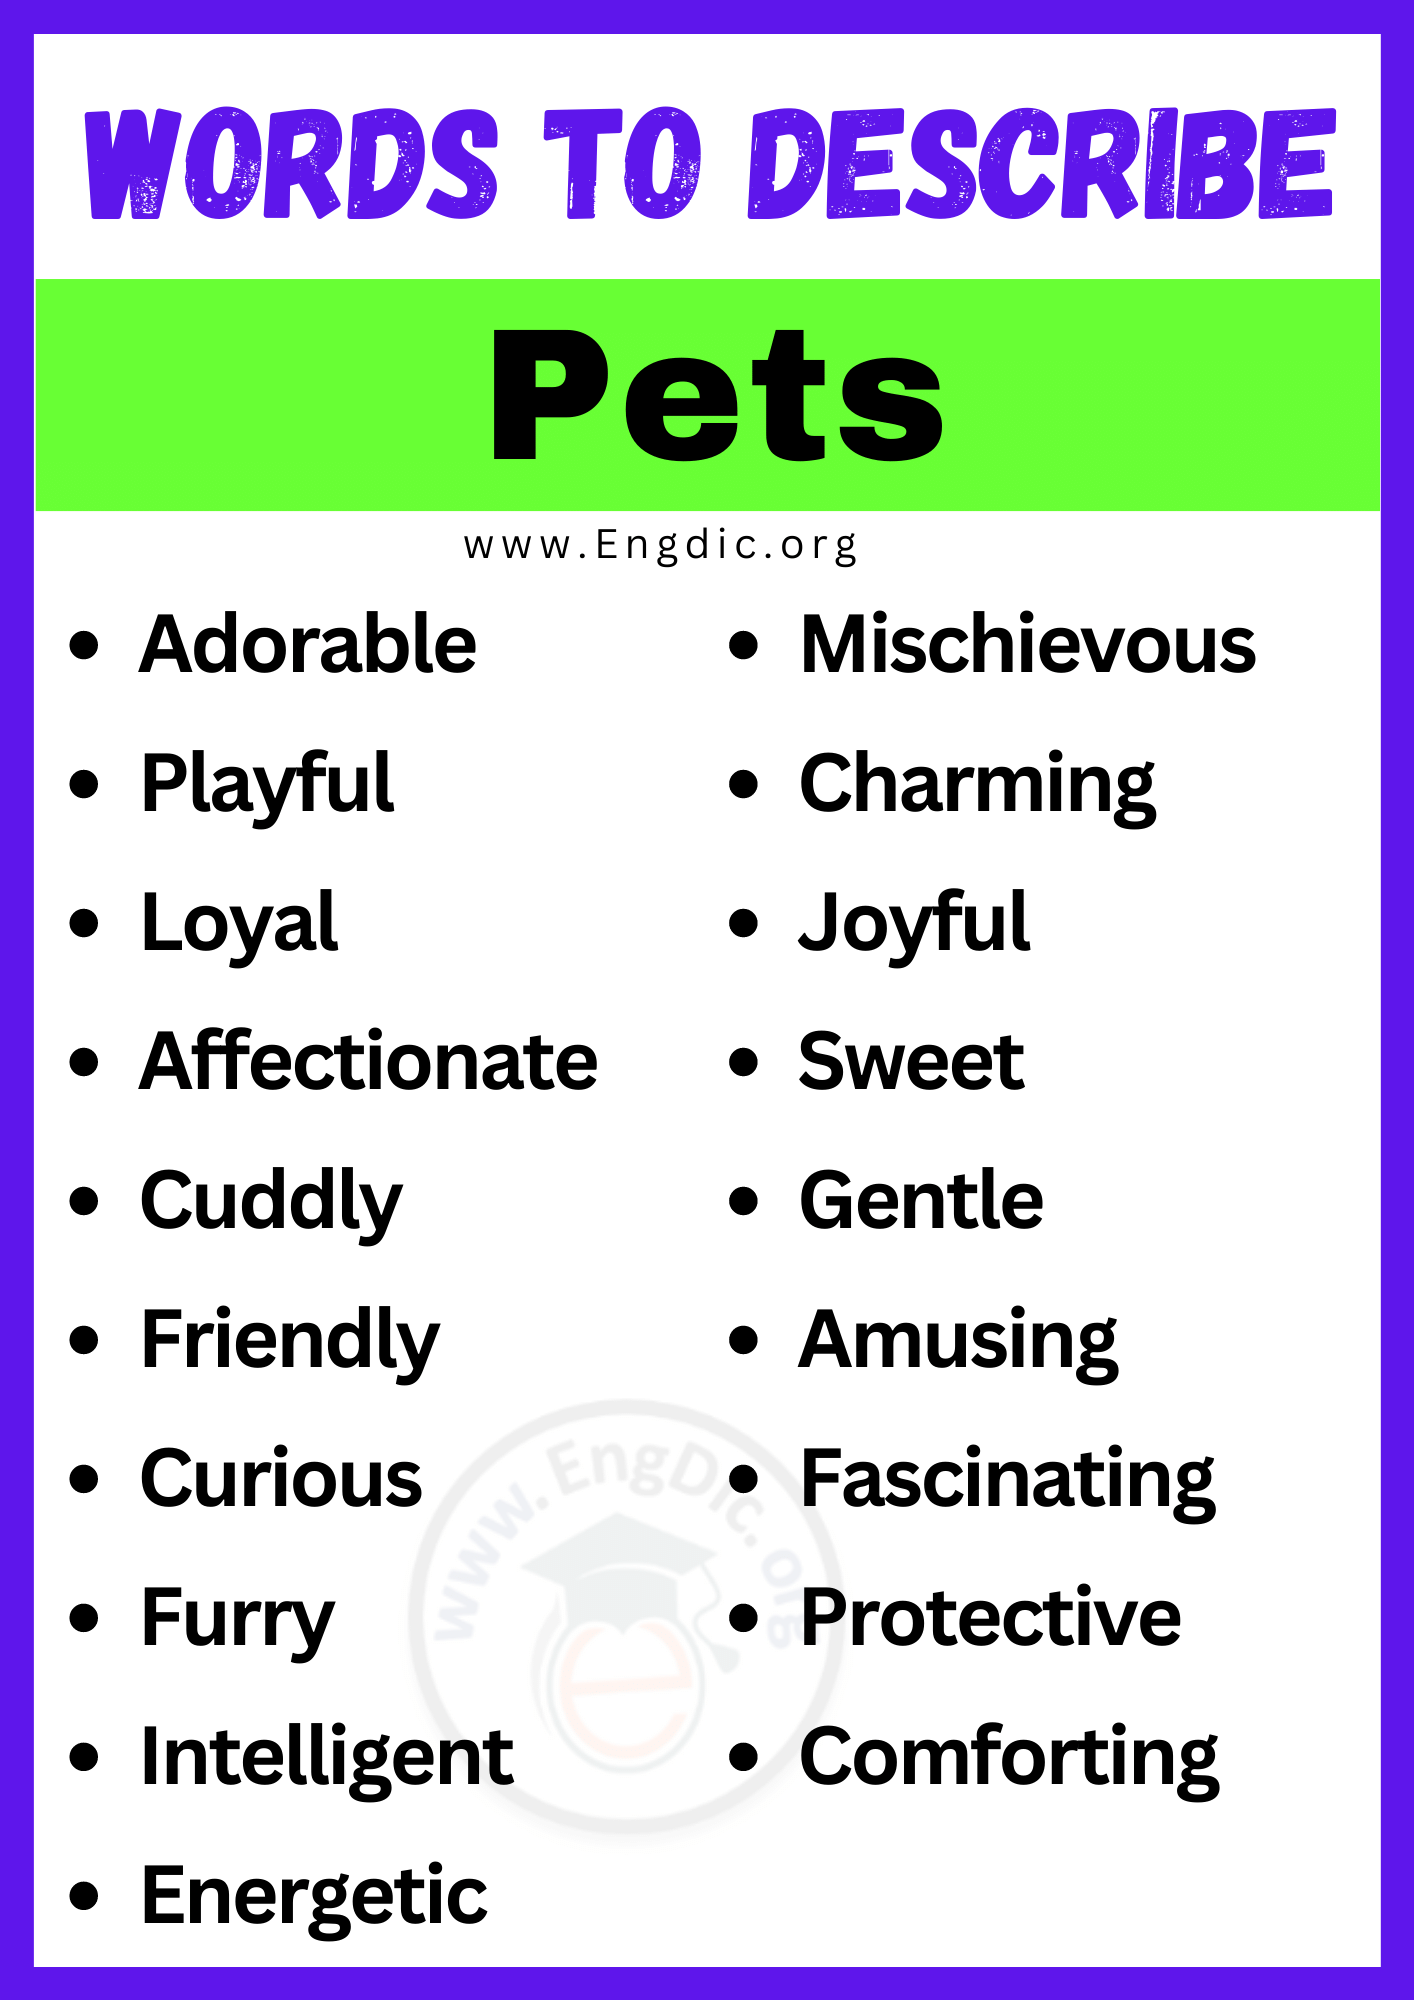 Words to Describe Pets